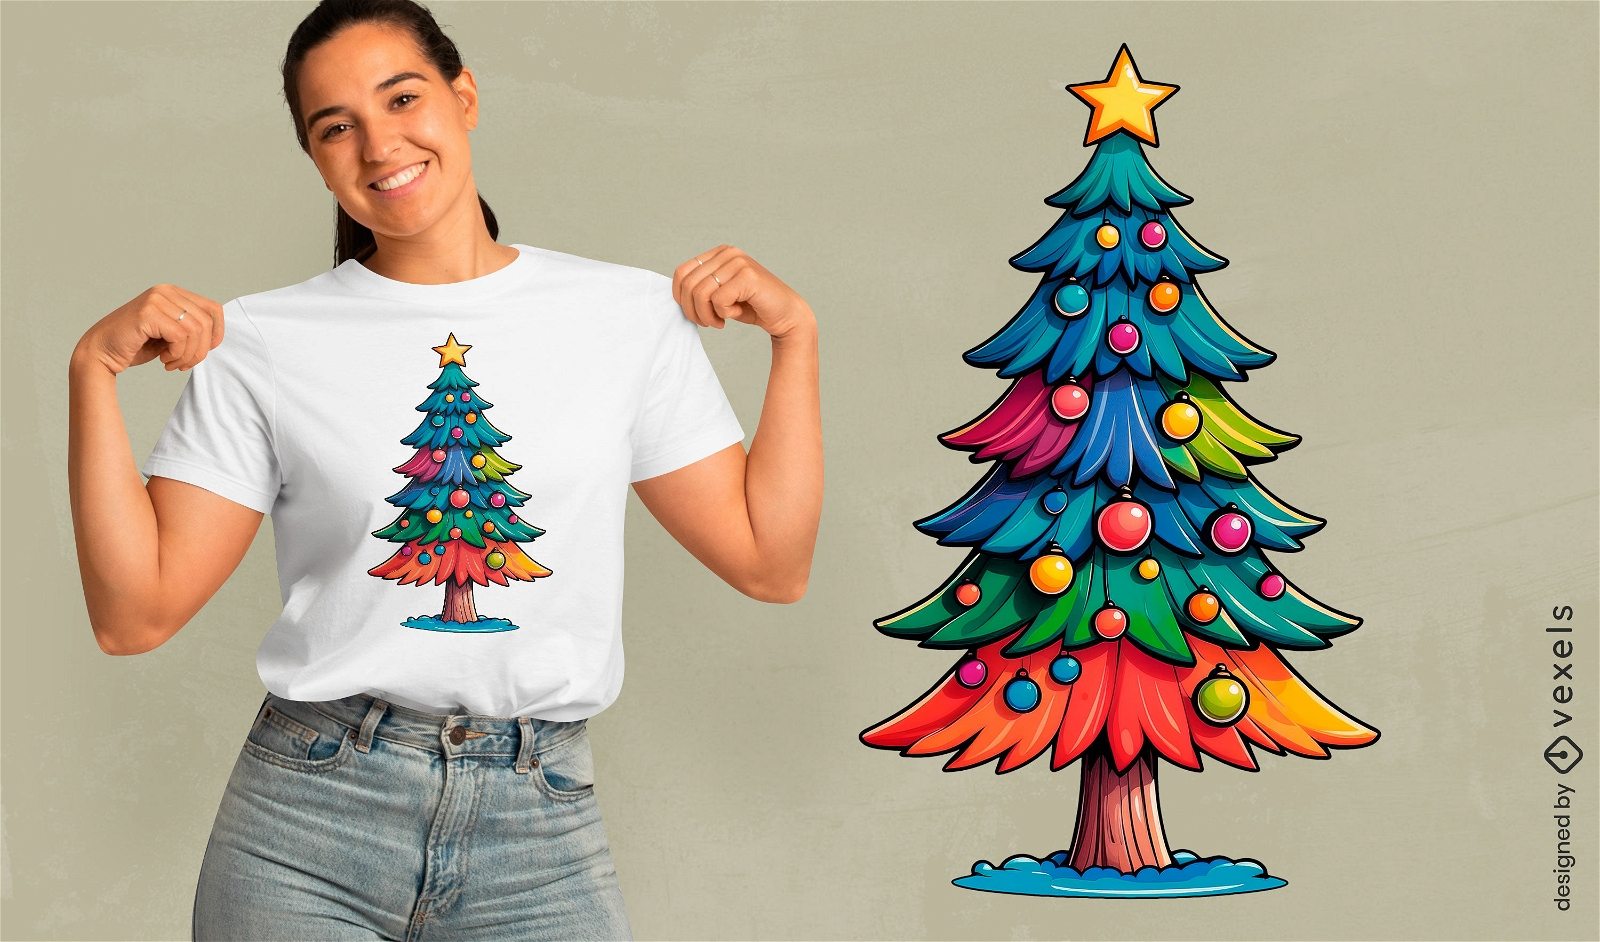 Diseño de camiseta de árbol de Navidad festivo.